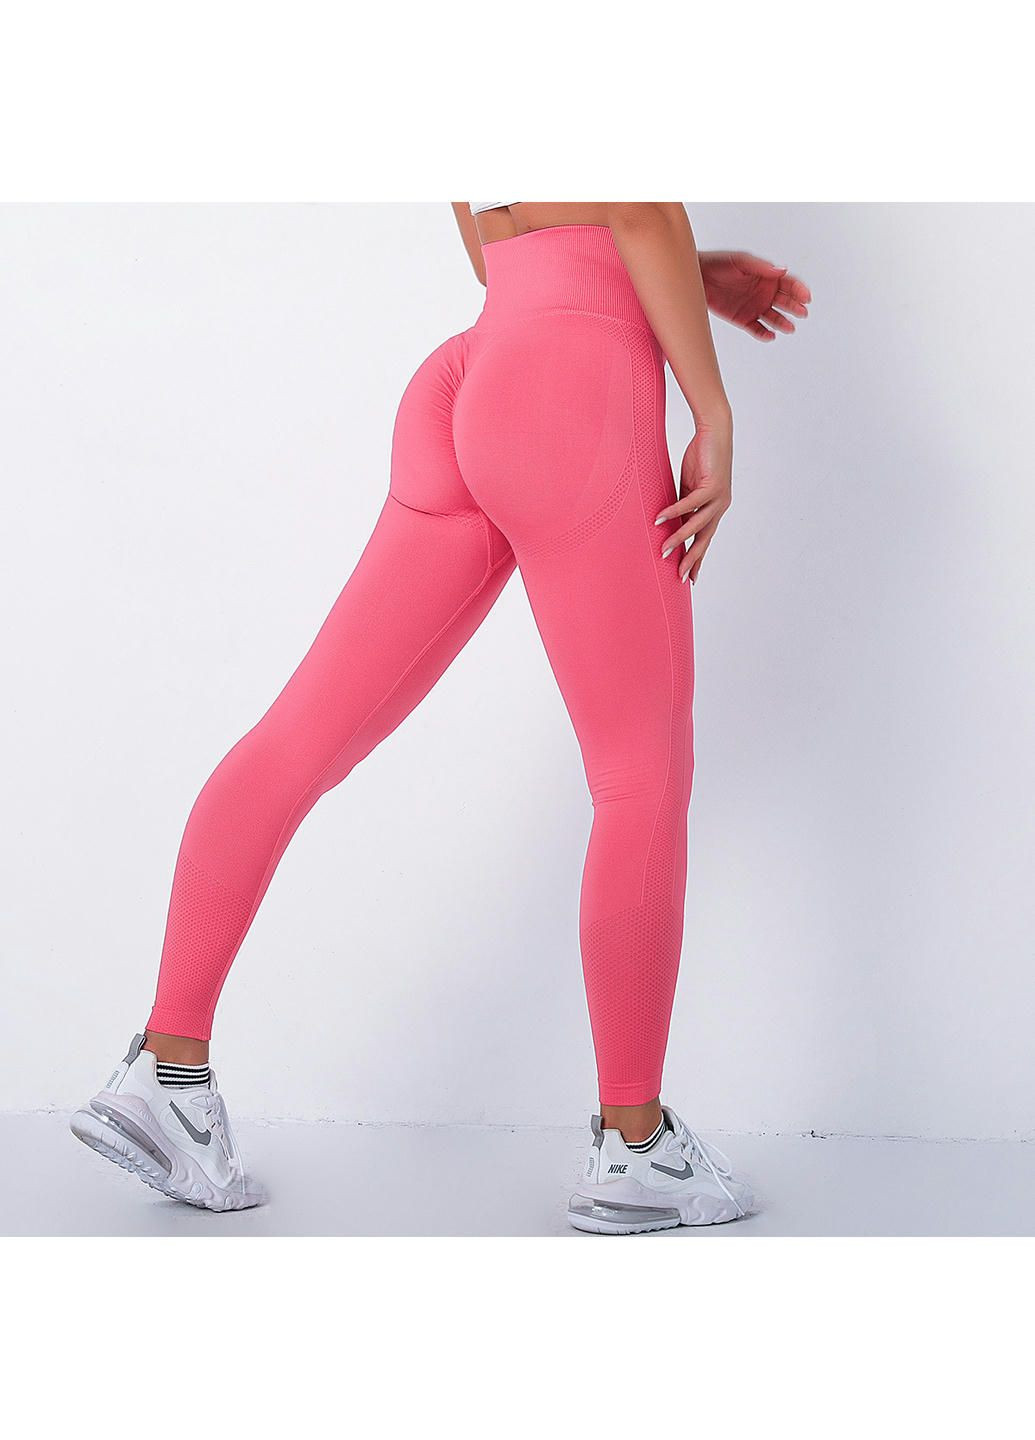 Комбинированные демисезонные леггинсы женские спортивные 10894 xl розовые Fashion